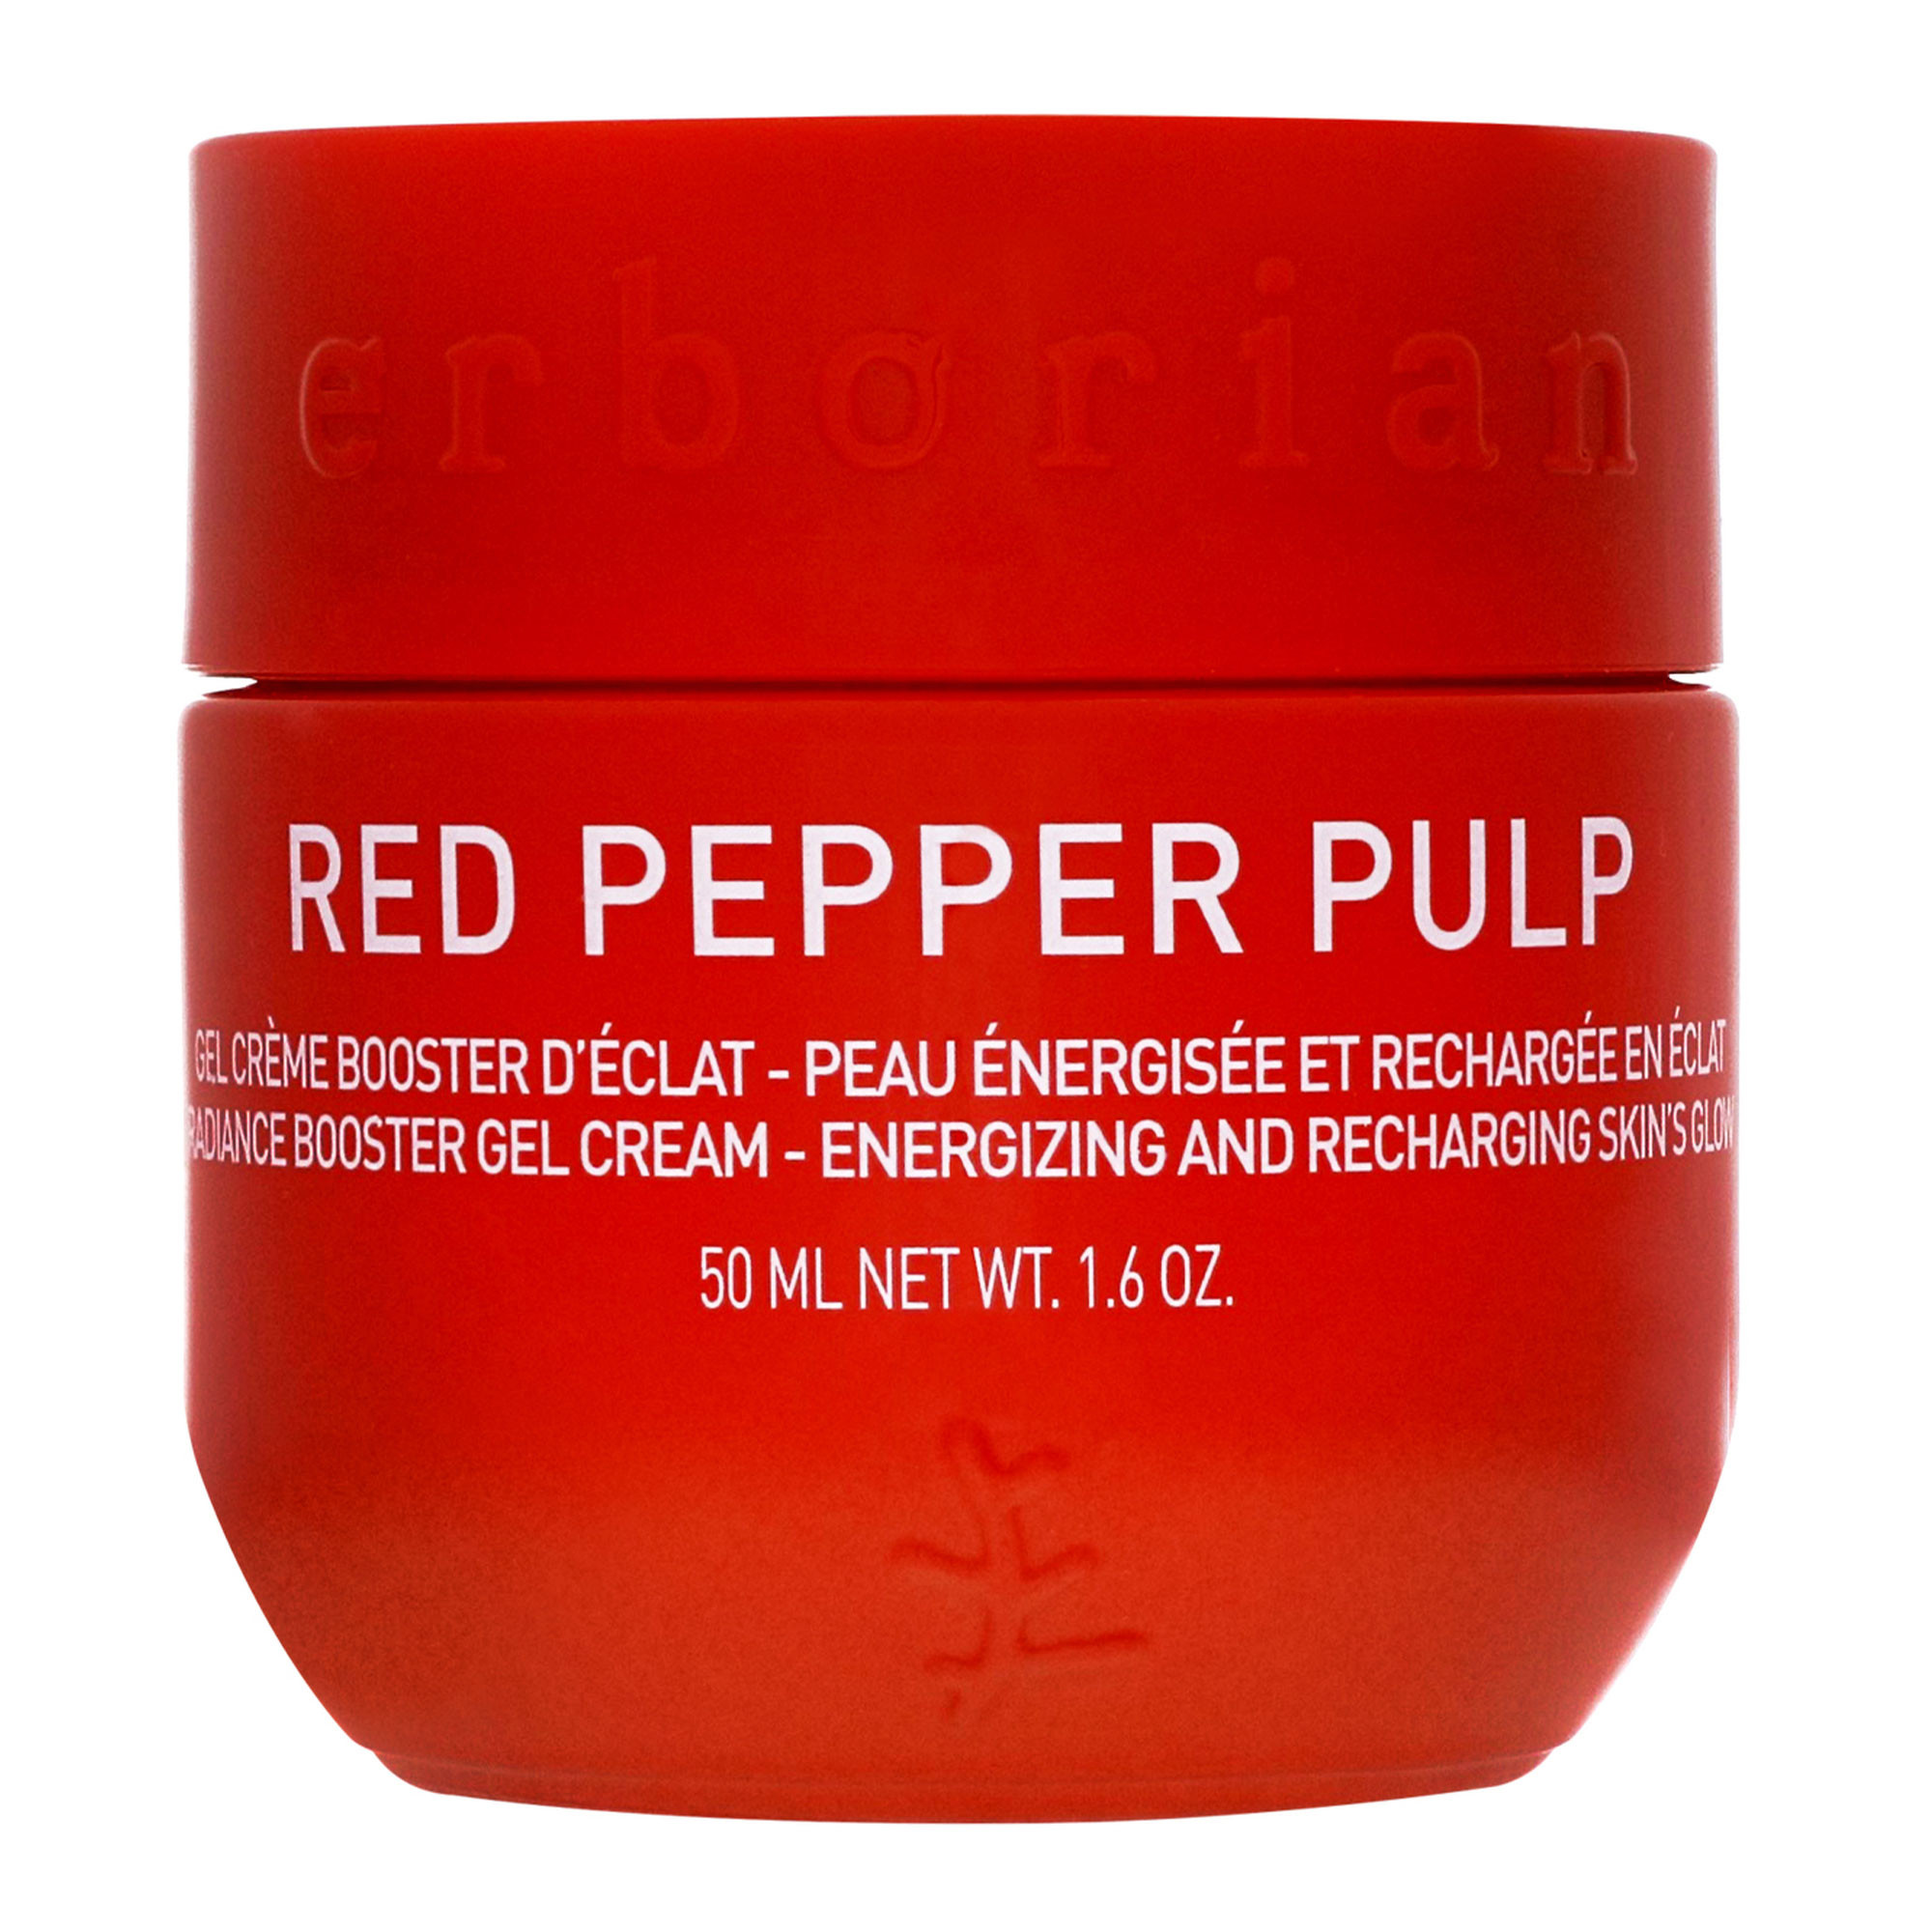 Гель-крем для лица Erborian Red Pepper Pulp